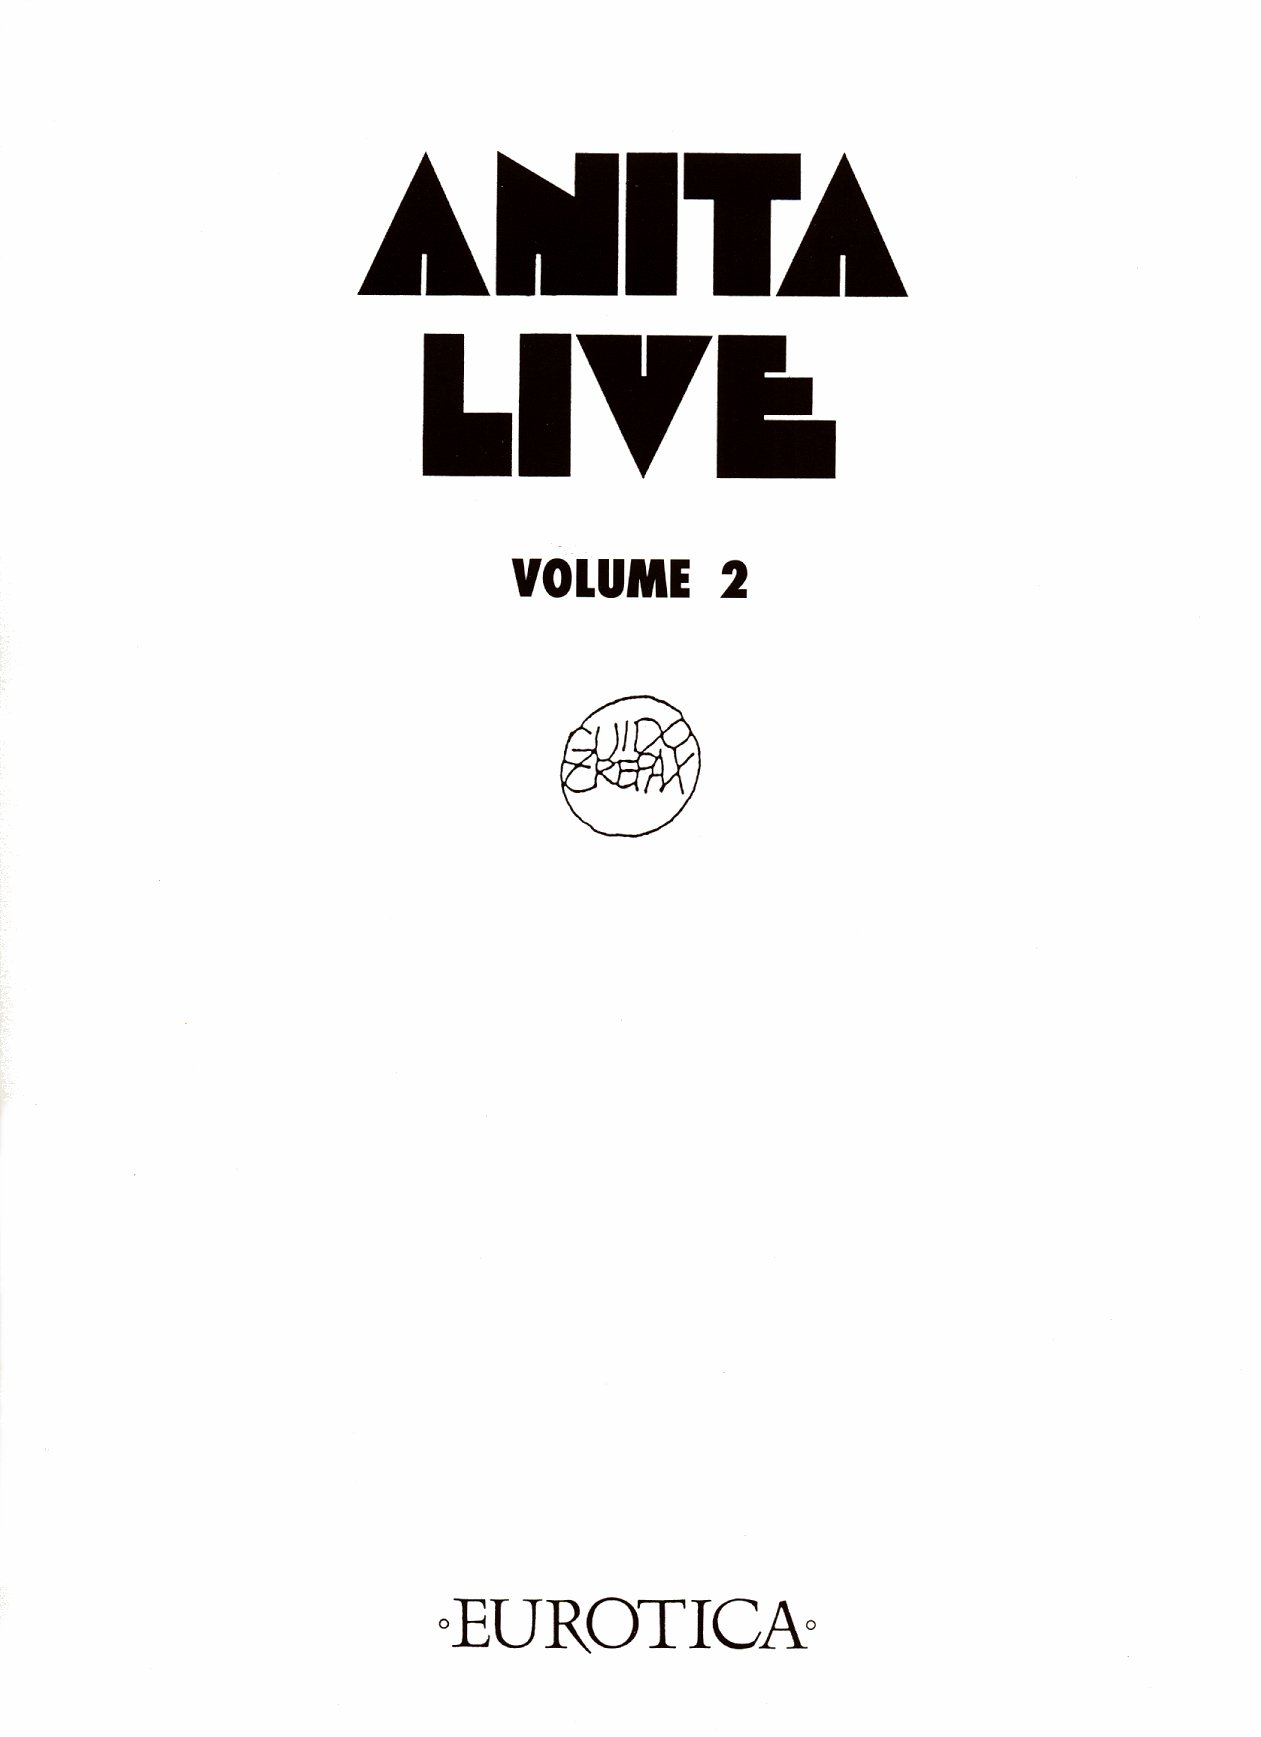 [Guido Crepax] Anita Live Vol.2 [English] 